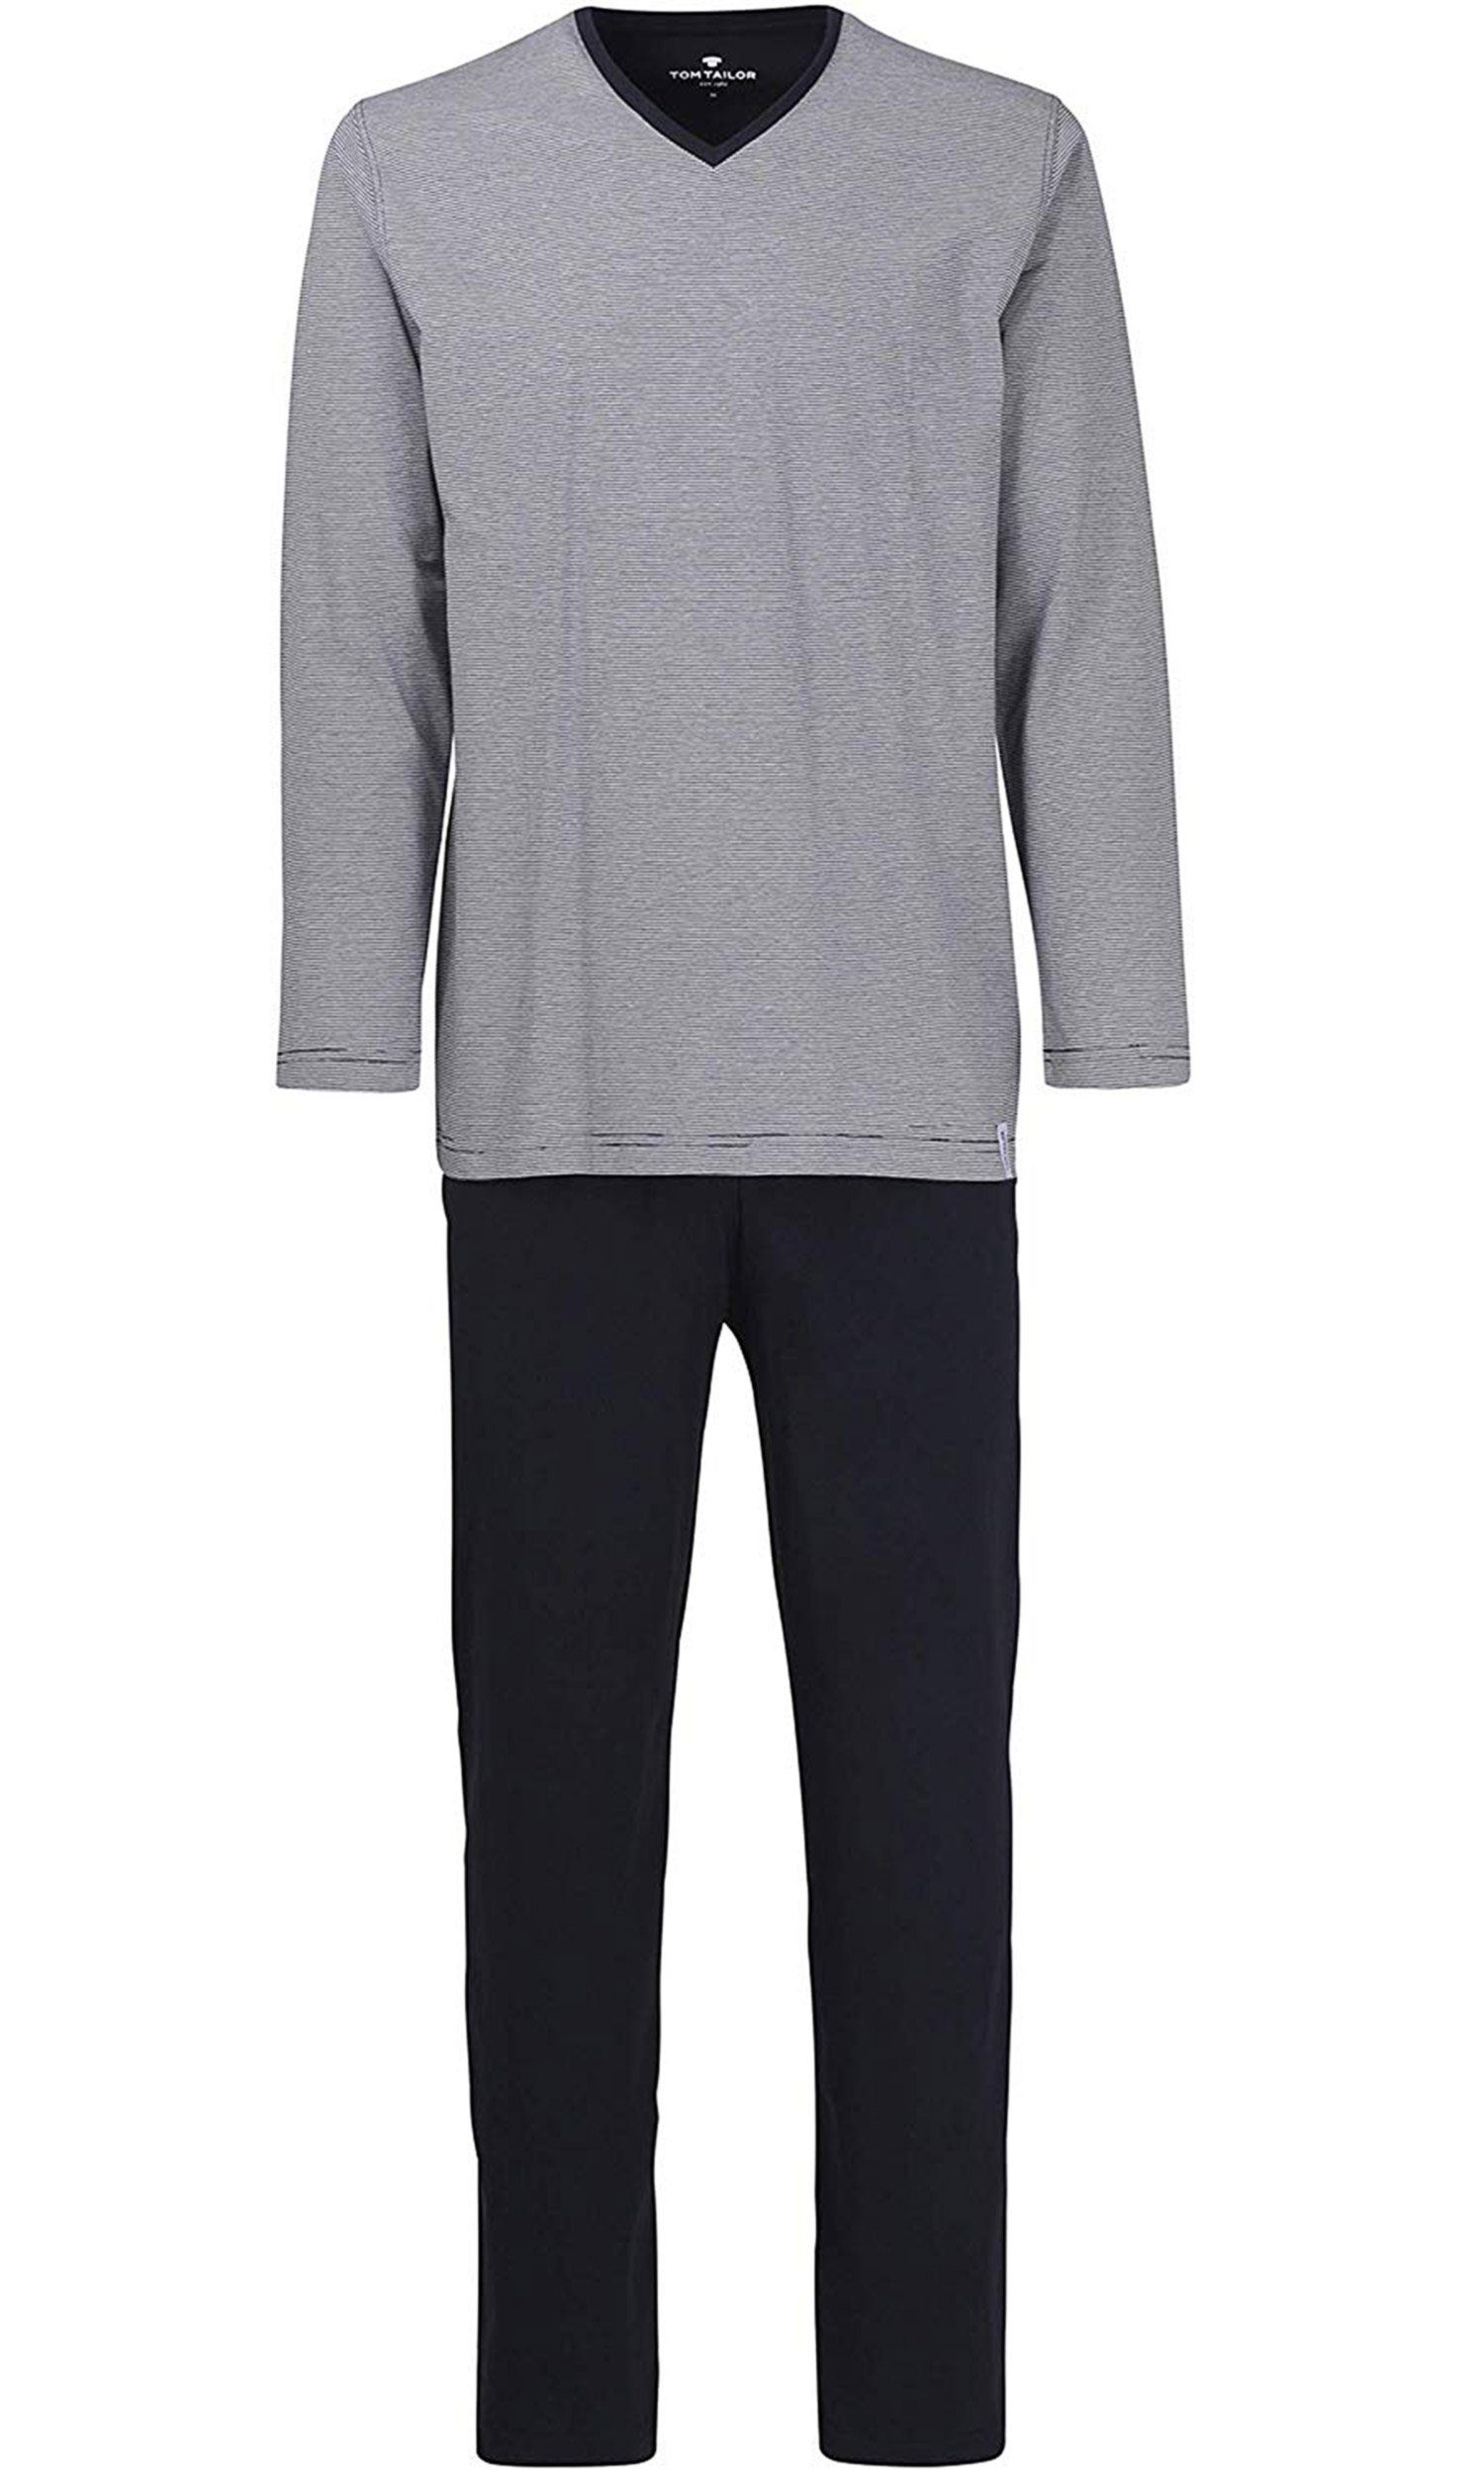 TOM TAILOR Pyjama »Pure Cotton« Herren Schlafanzug mit gestreiftem Oberteil  aus reiner Baumwolle online kaufen | OTTO